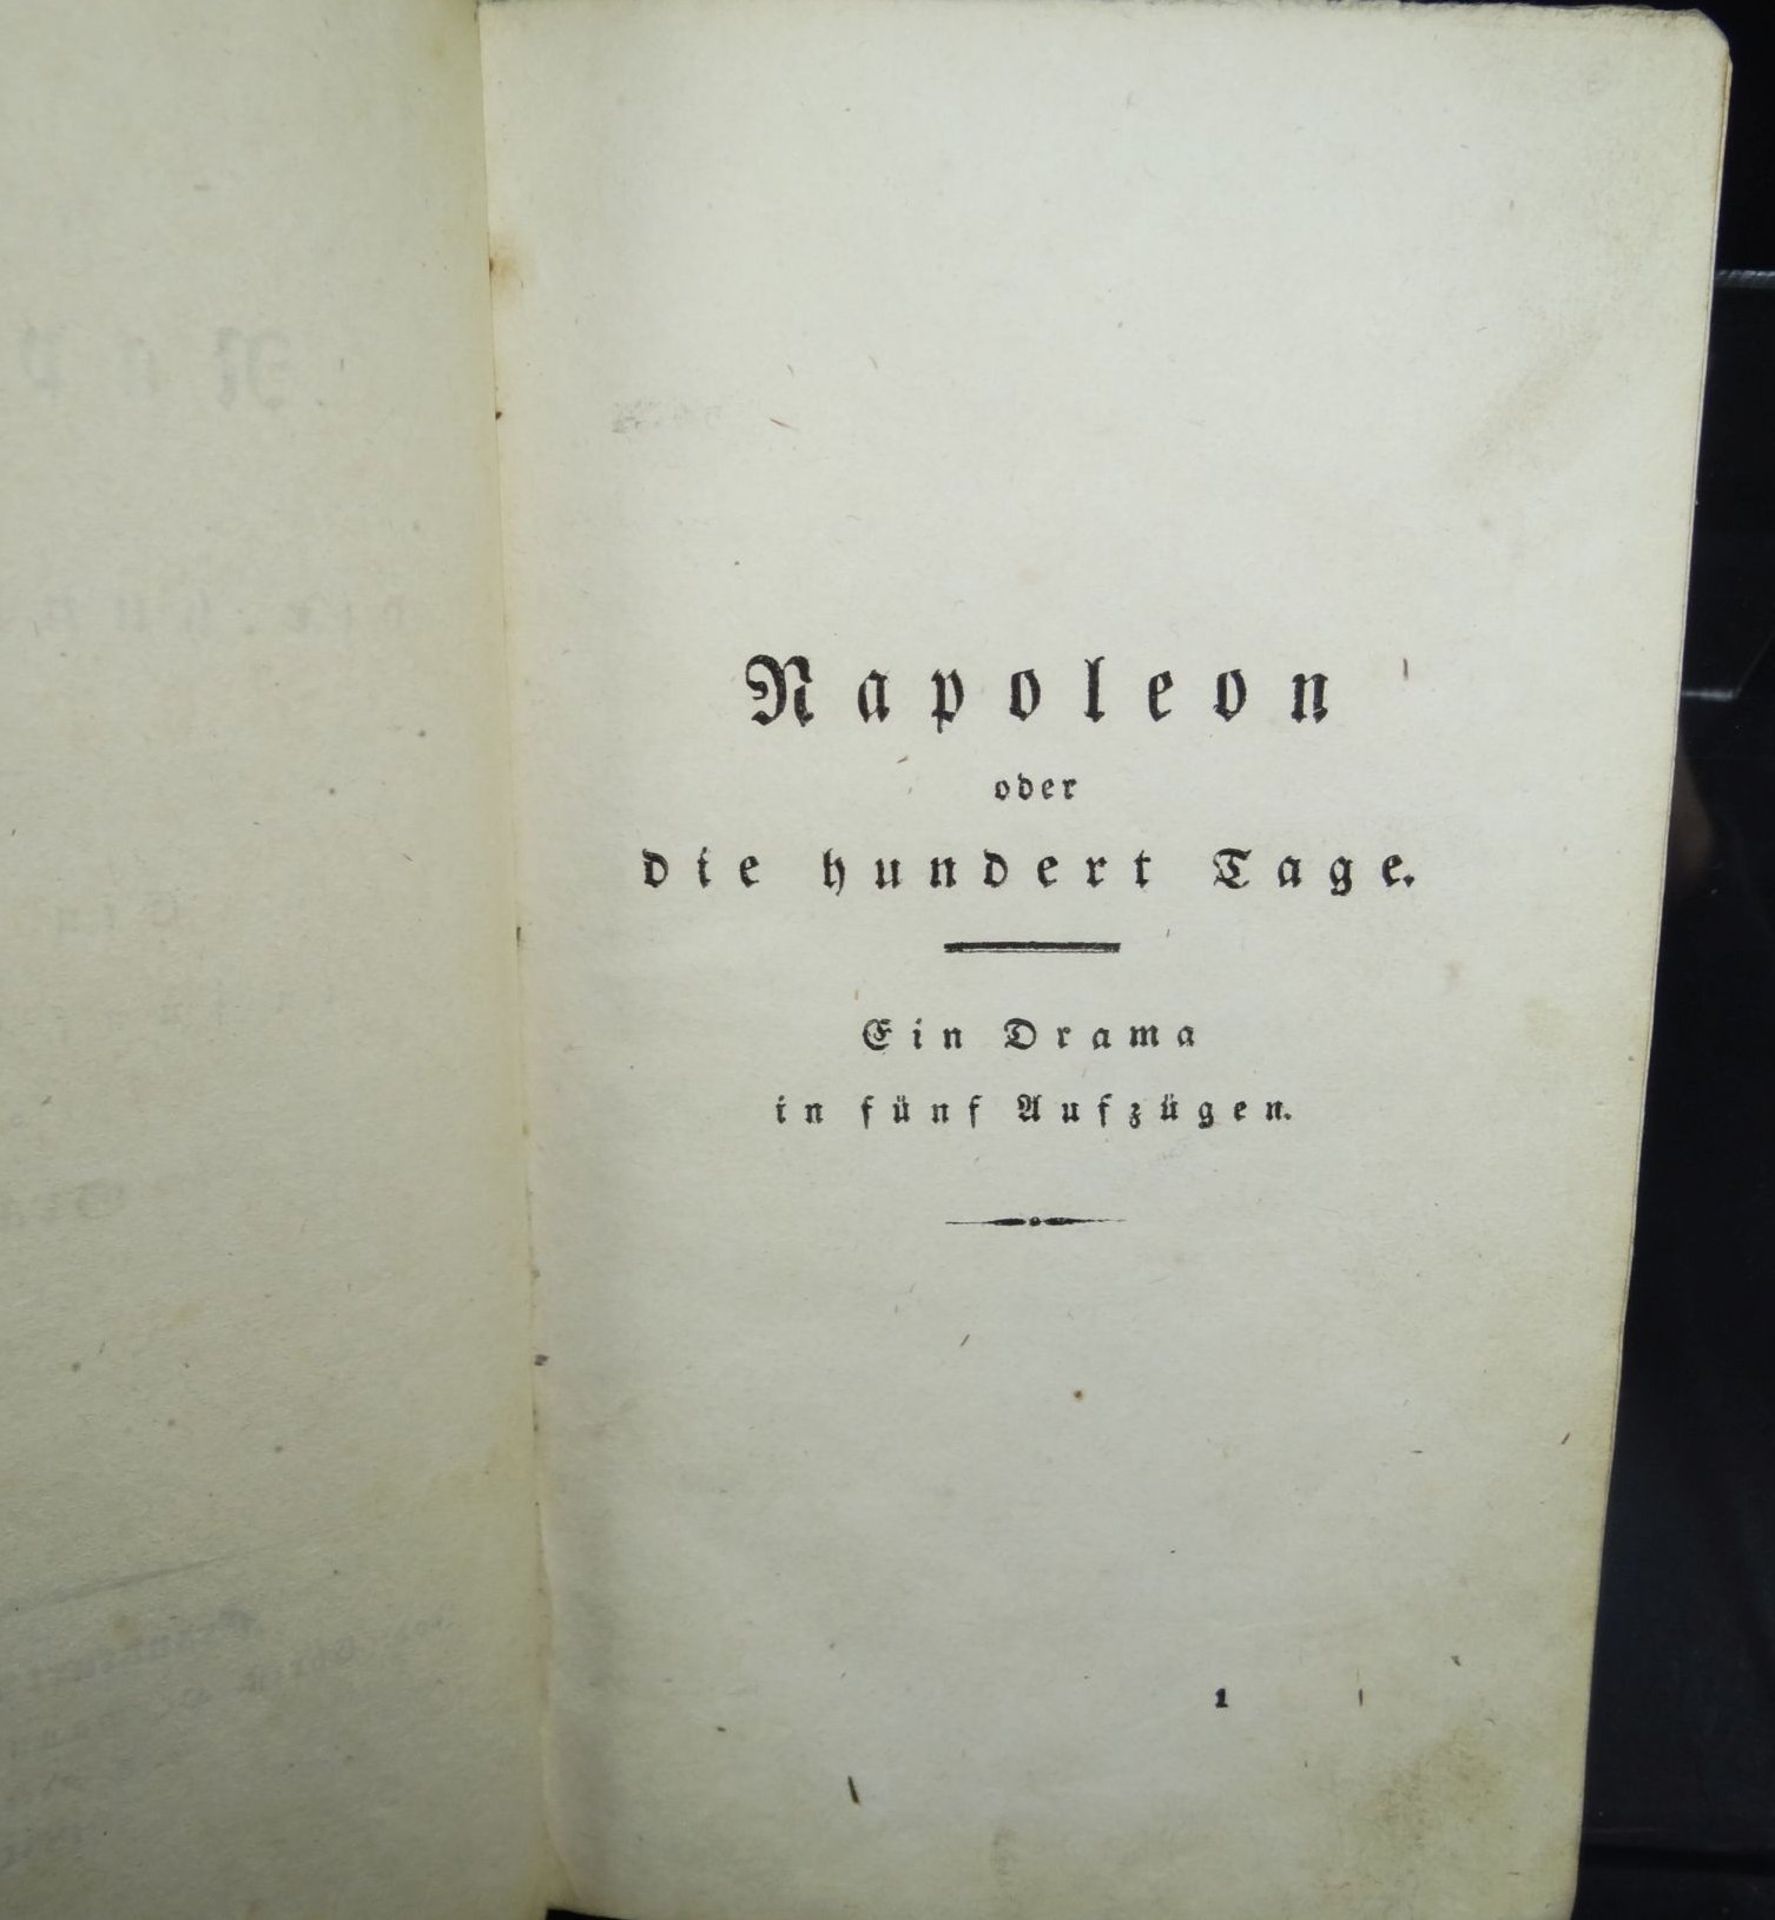 Grabbe "Napoleon oder die 100 Tage" Theaterstück, 1831, 322 S. Kl.-8°. Pbd. d. Zt. Erstausga- - - - Bild 3 aus 7